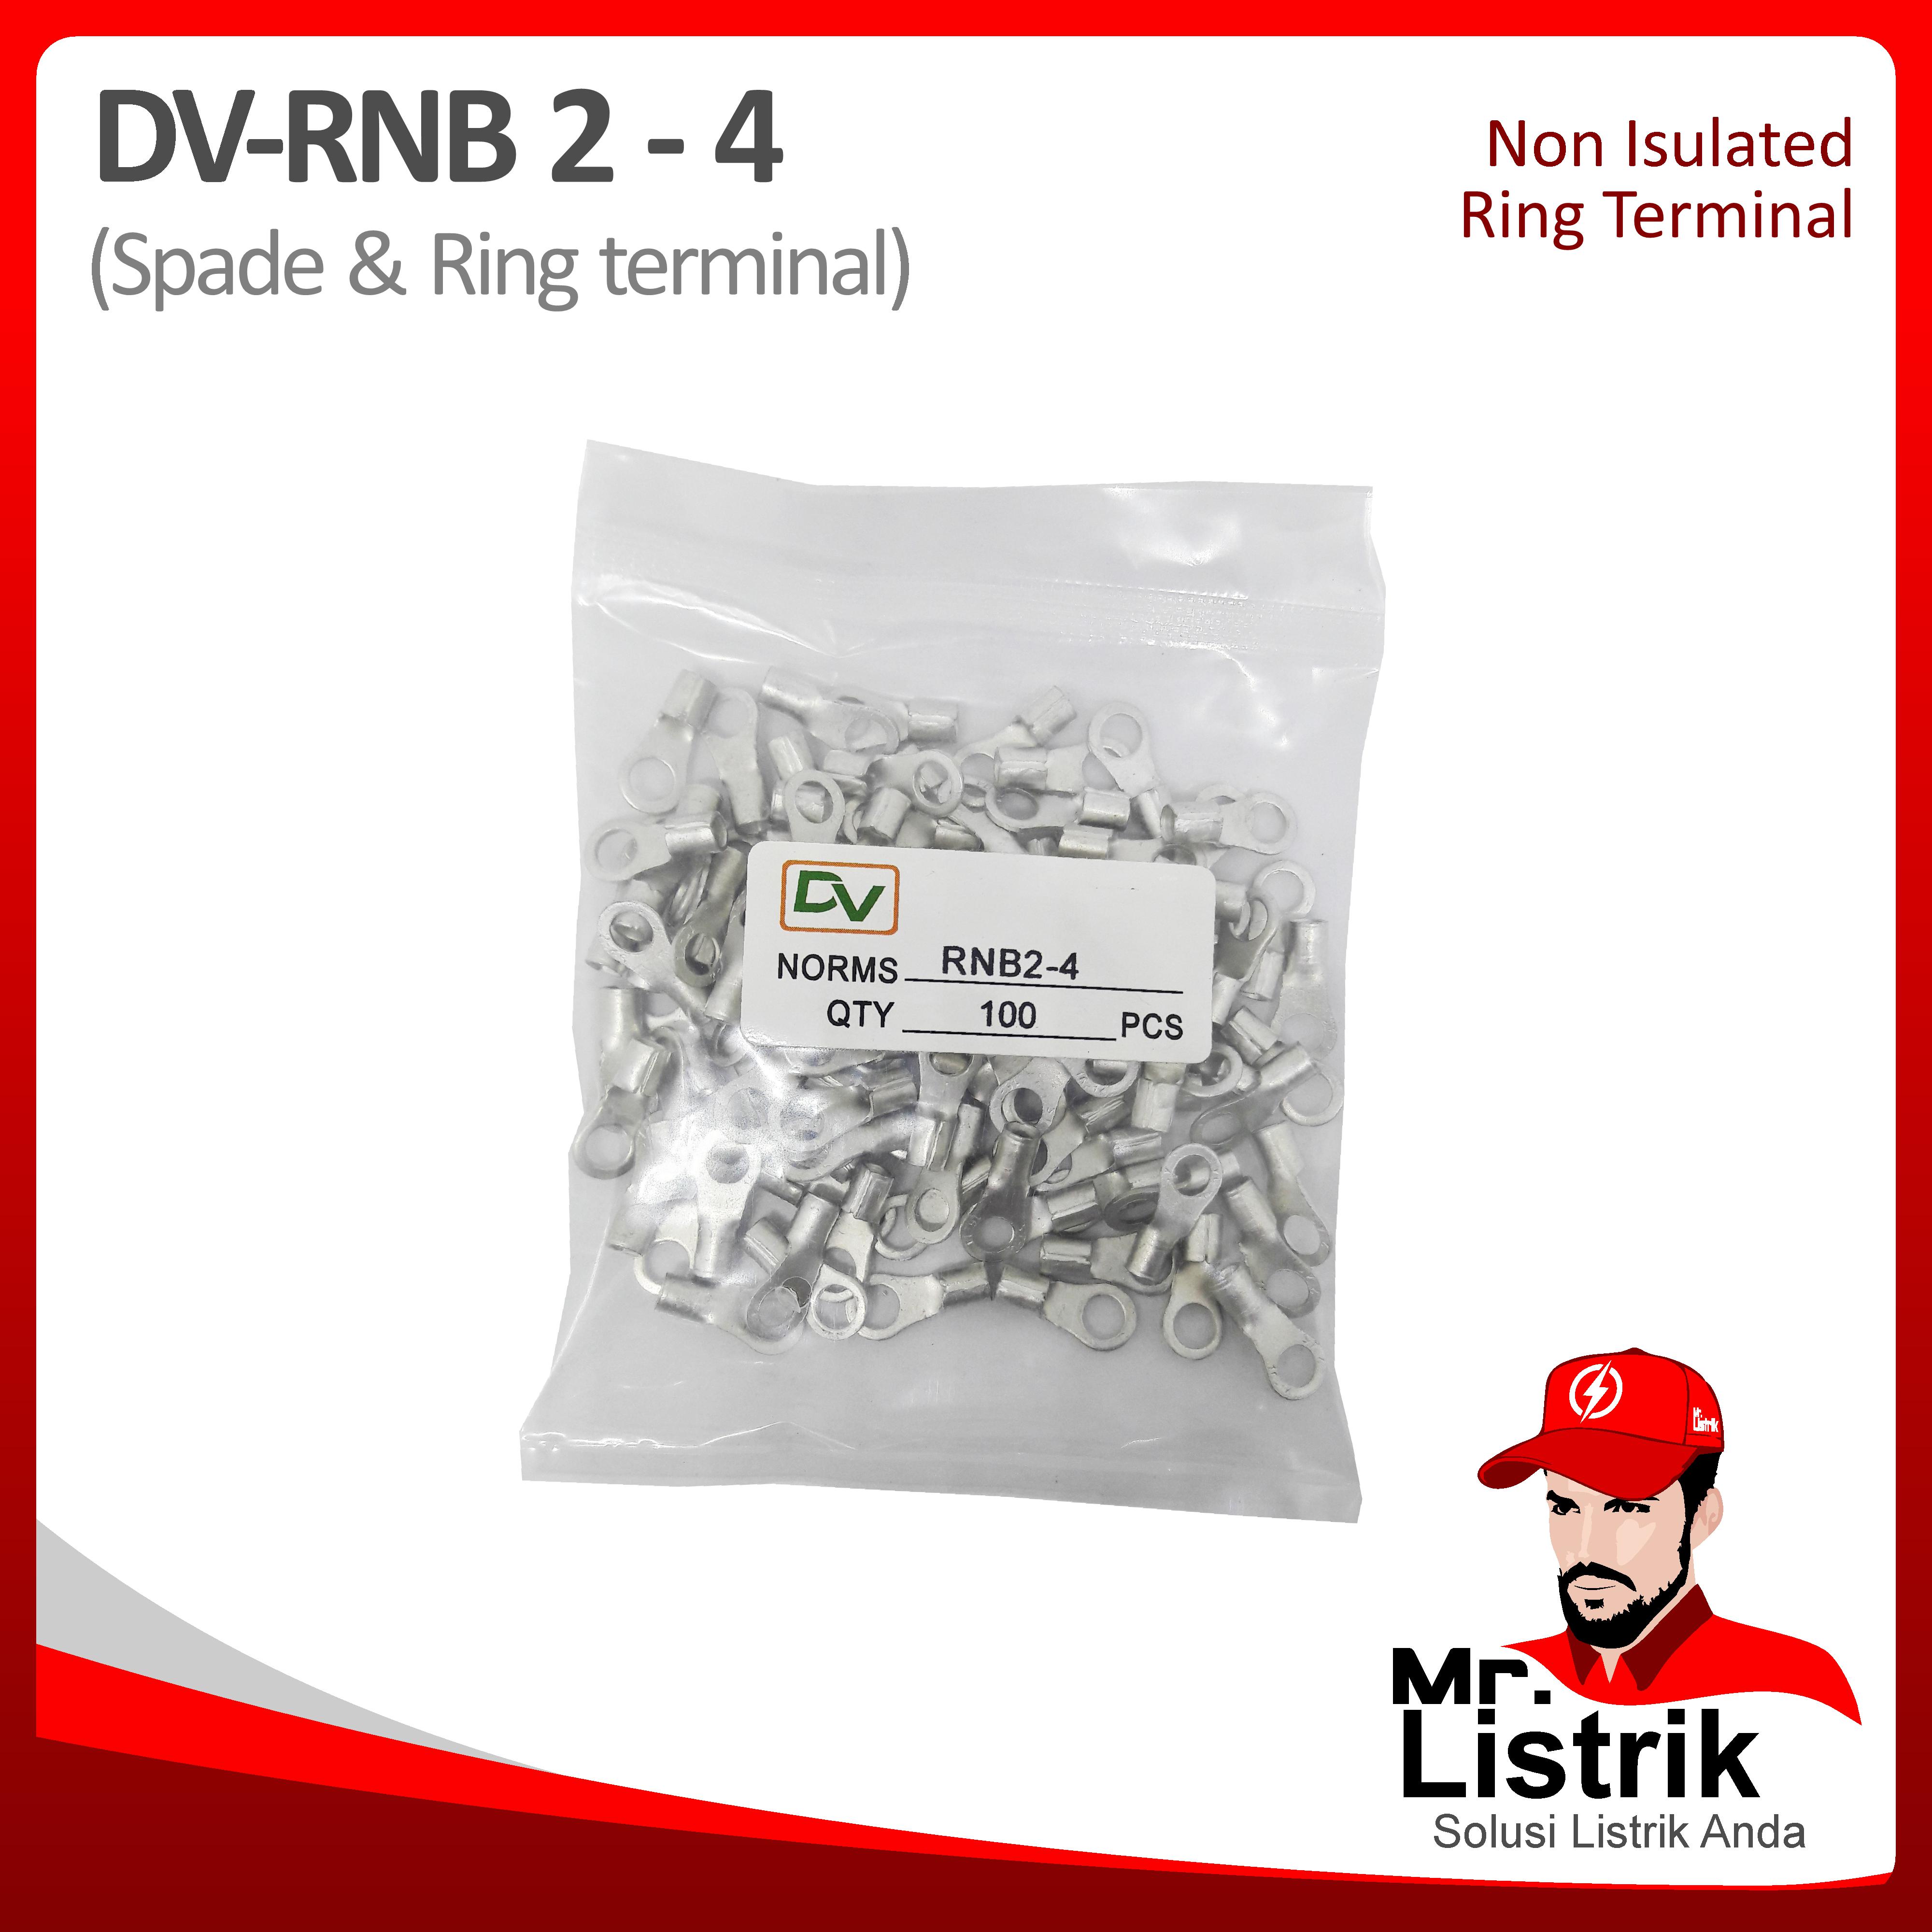 Non Insulated Skun Ring 1.5-2.5mm DV RNB2-4